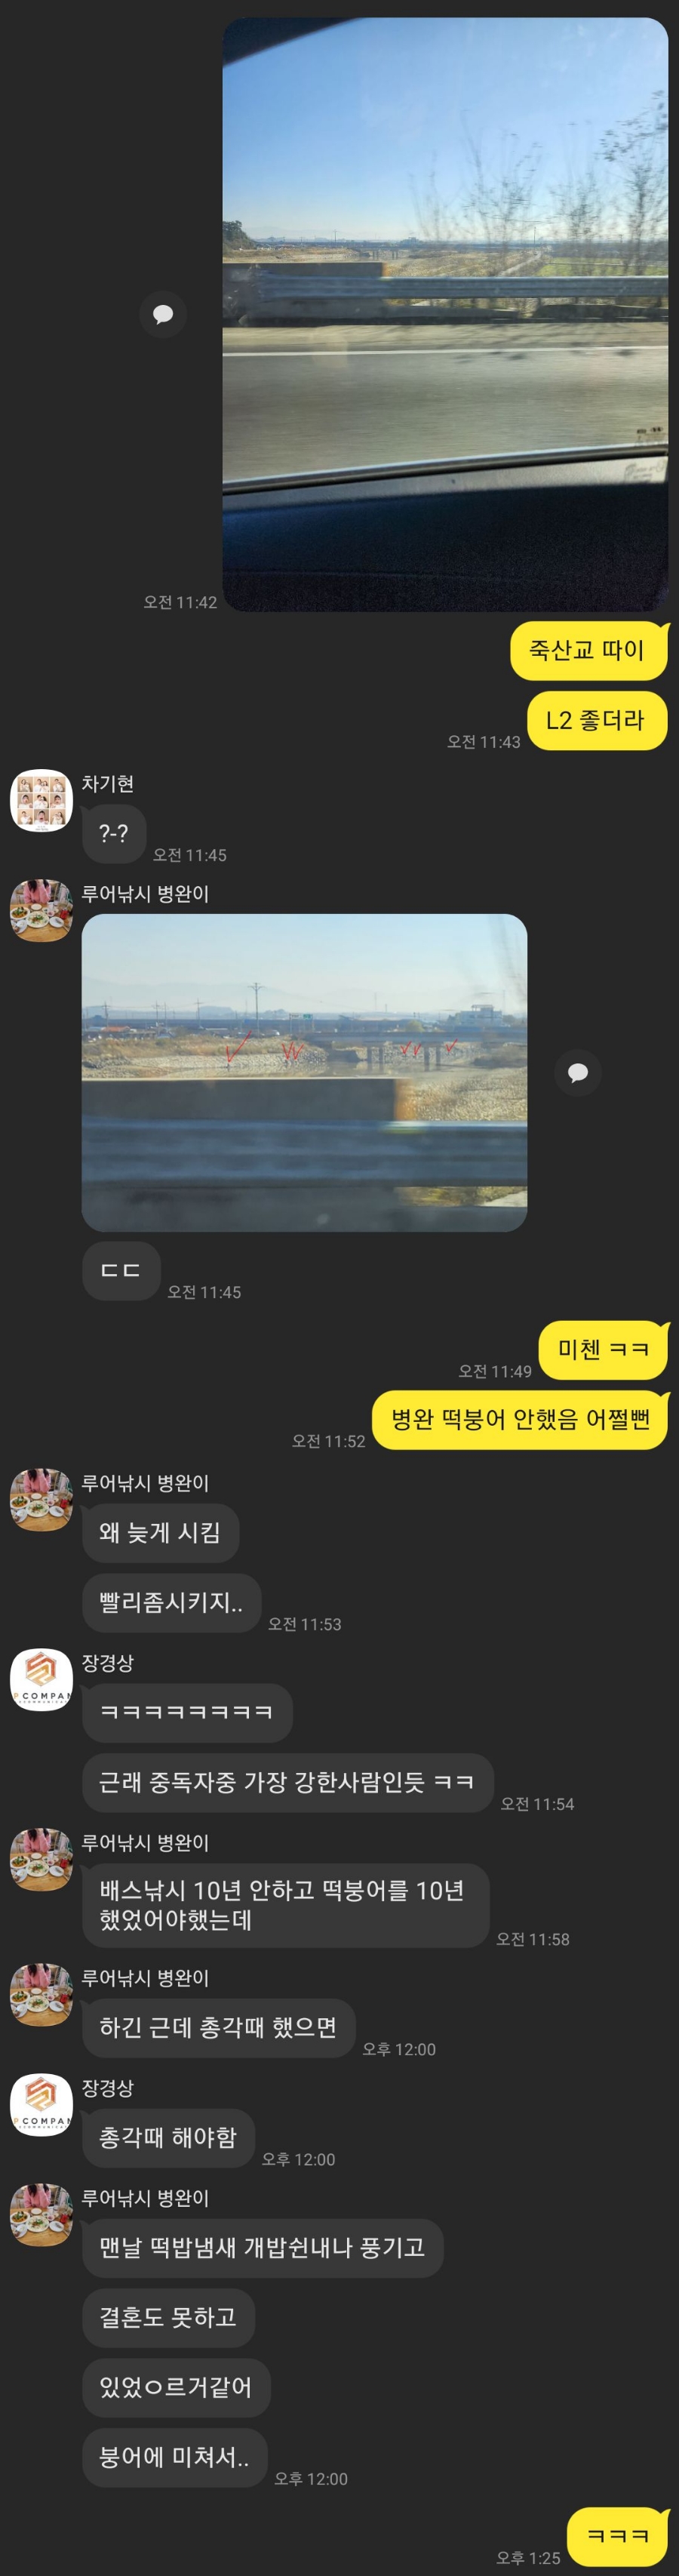 강남 코엑스몰 스타필드 호카 매장방문